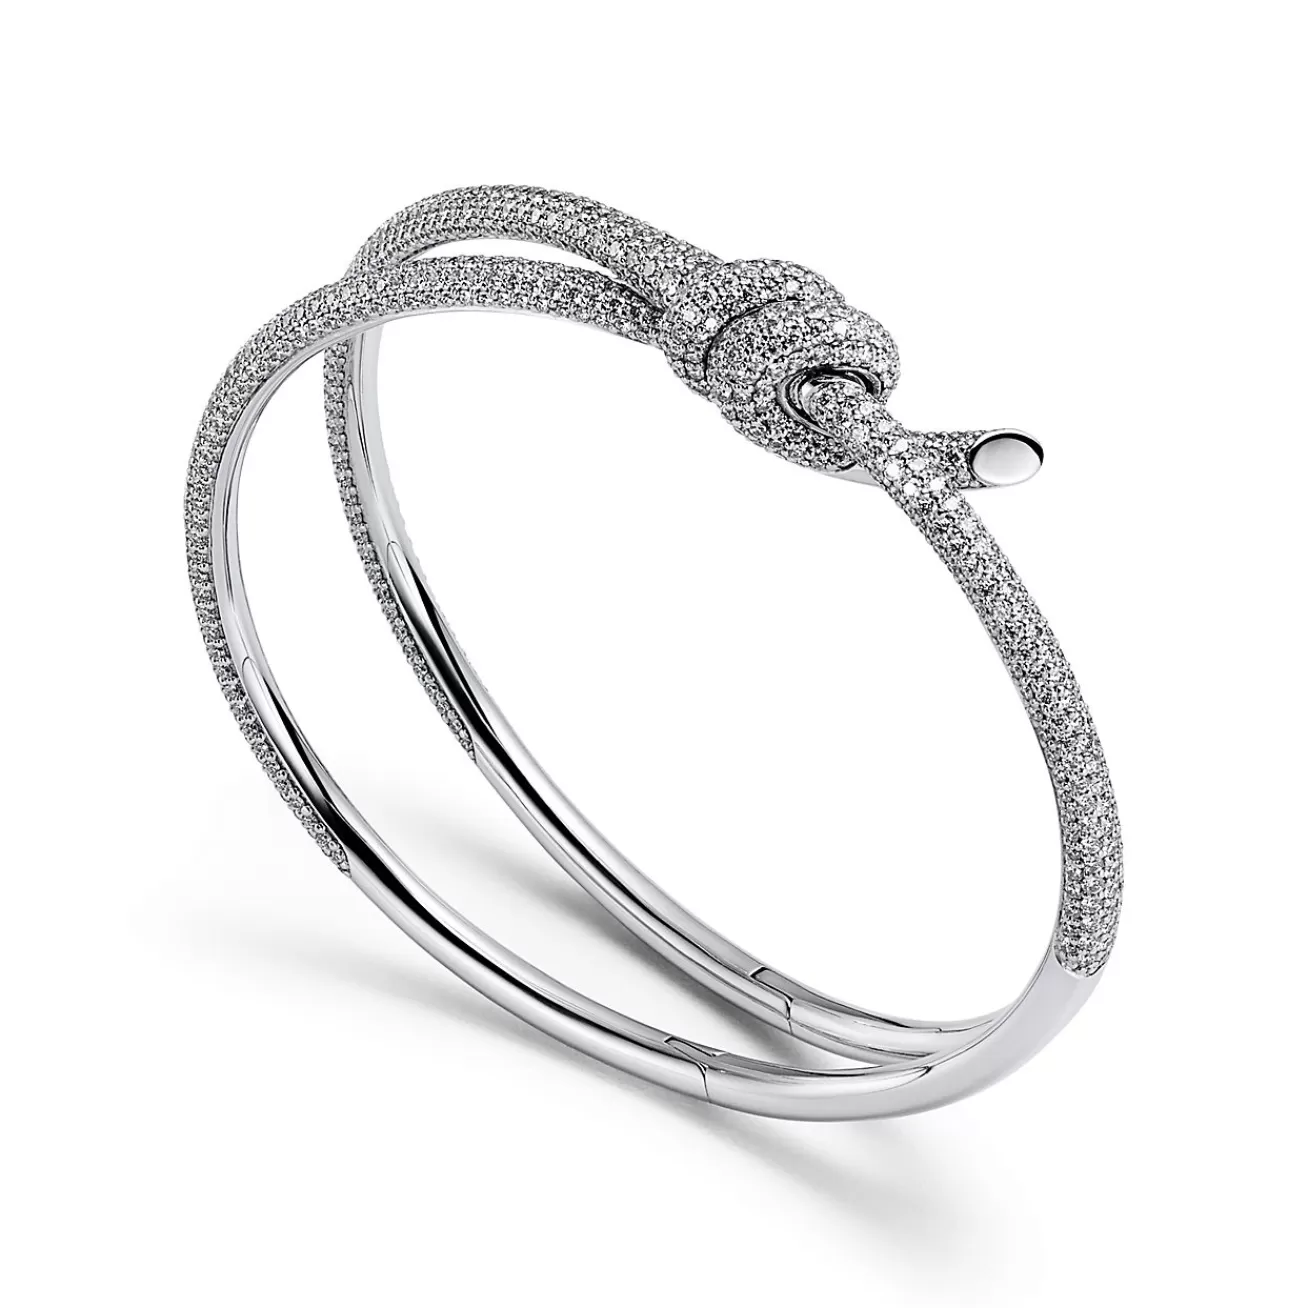 Tiffany & Co. Tiffany Knot Double Row Bracelet in White Gold with Diamonds | ^ Bracelets | Diamond Jewelry